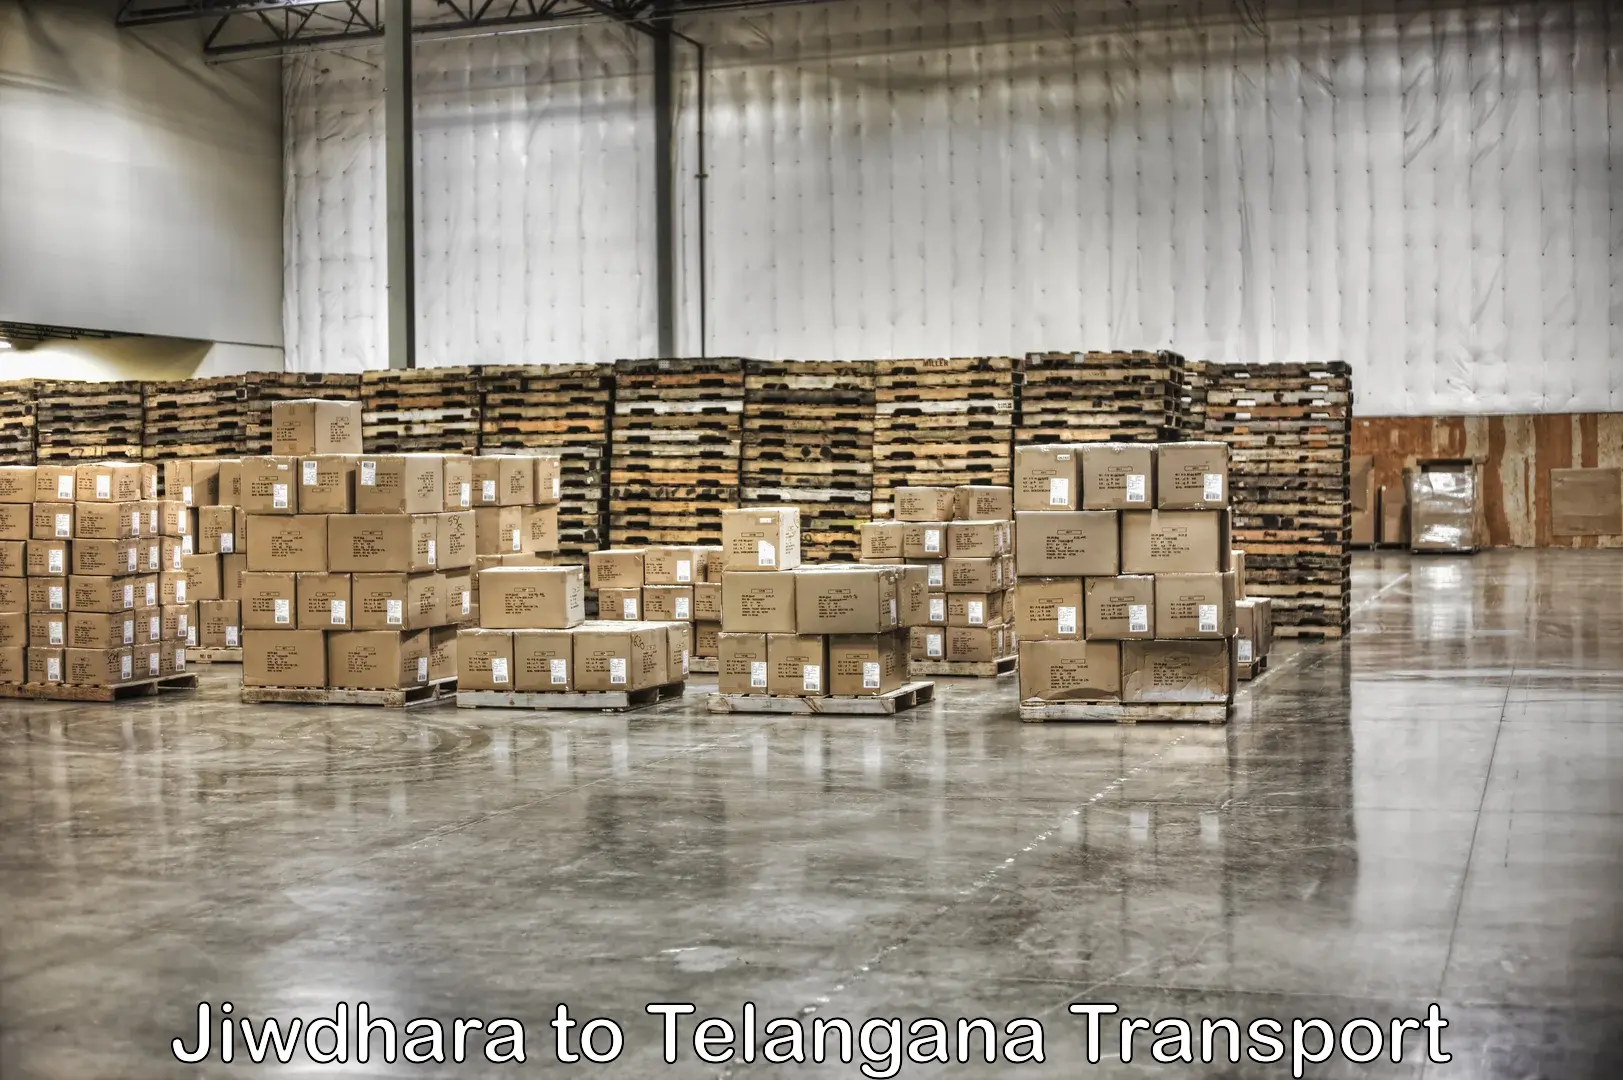 Furniture transport service in Jiwdhara to Mudigonda